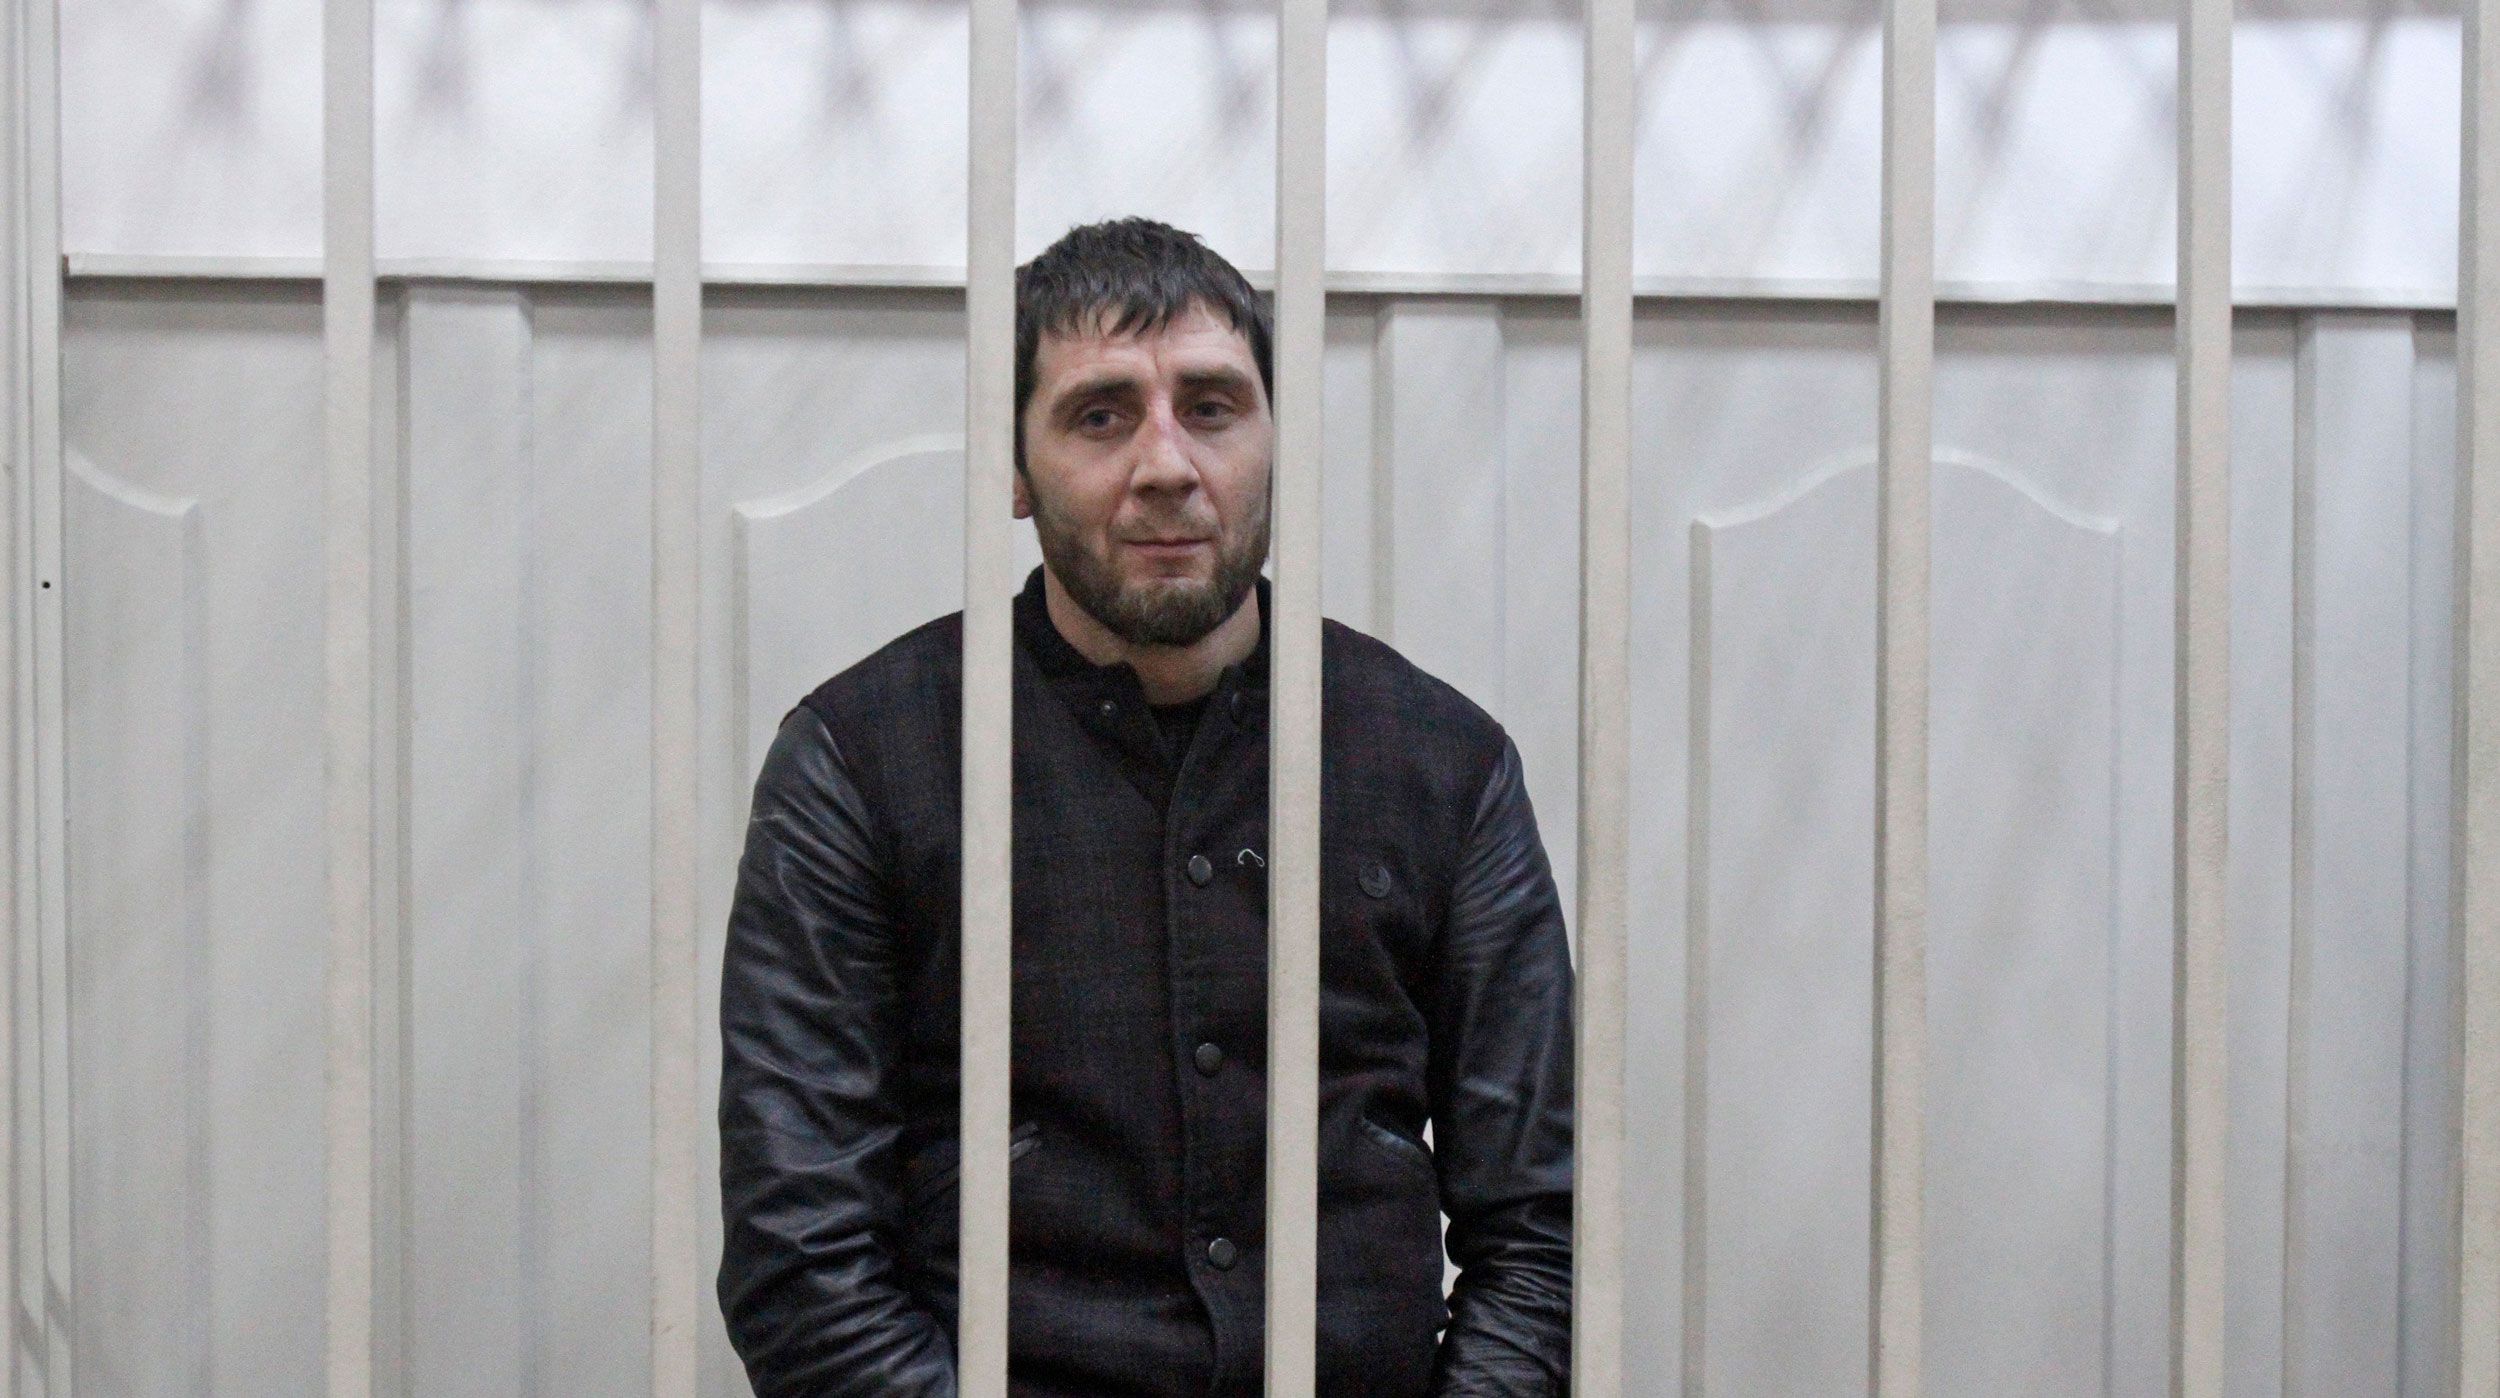 Dailystorm - Суд не дал убийце Немцова пожизненного срока